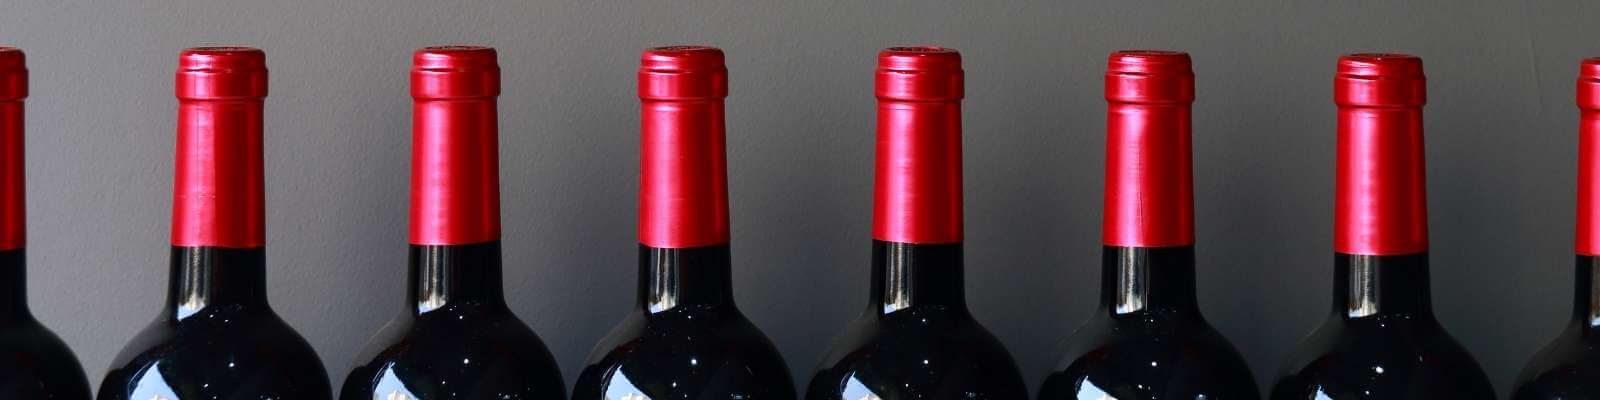 Tipos y formas de copas para vino - Concha y Toro